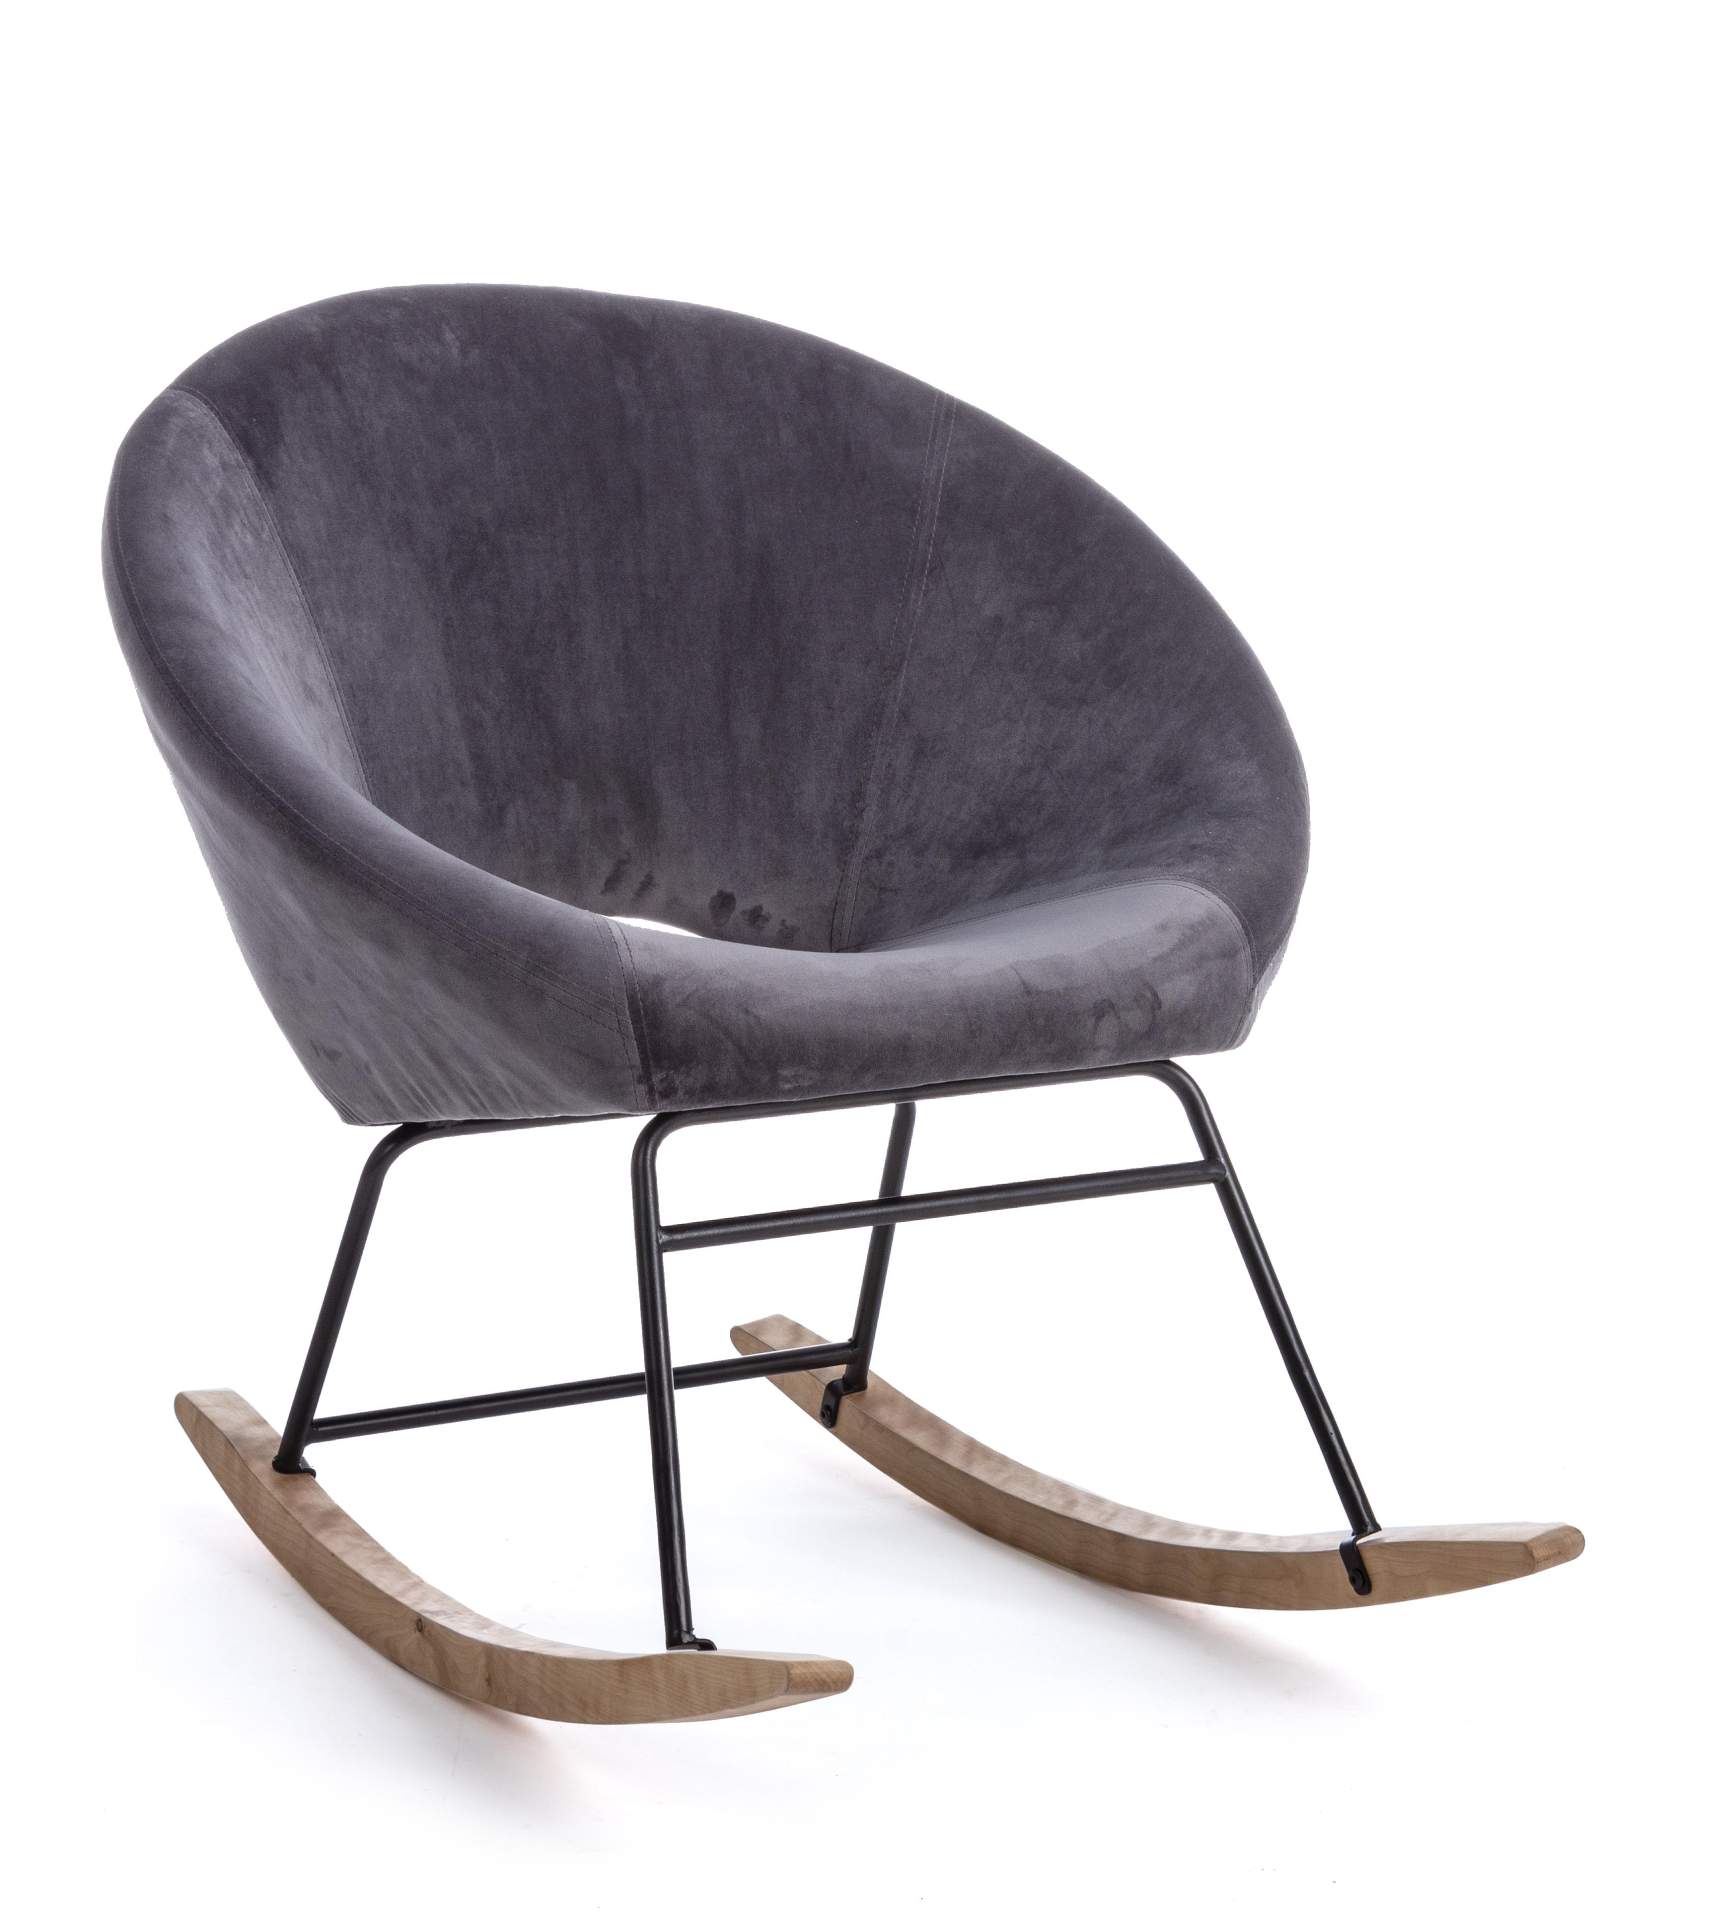 Der Sessel Annika überzeugt mit seinem modernen Design. Gefertigt wurde er aus Stoff in Samt-Optik, welcher einen dunkelgrauen Farbton besitzt. Das Gestell ist aus Metall und hat eine schwarze Farbe. Der Sessel besitzt eine Sitzhöhe von 44 cm. Die Breite 